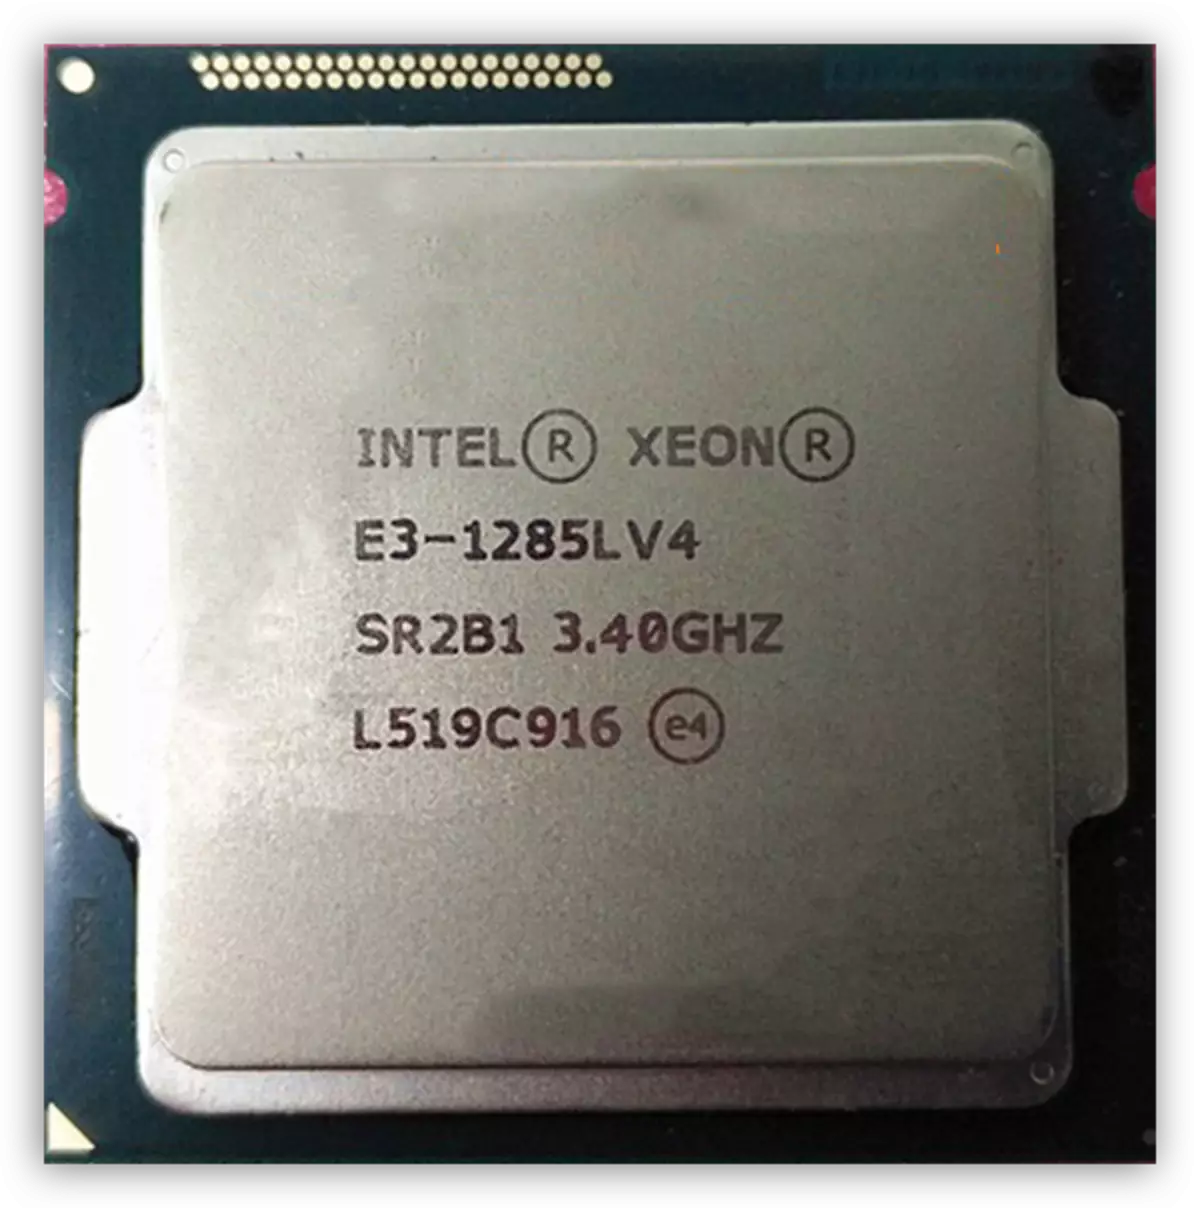 Broadwell memarlıq Xeon E3-1285L V4 prosessor